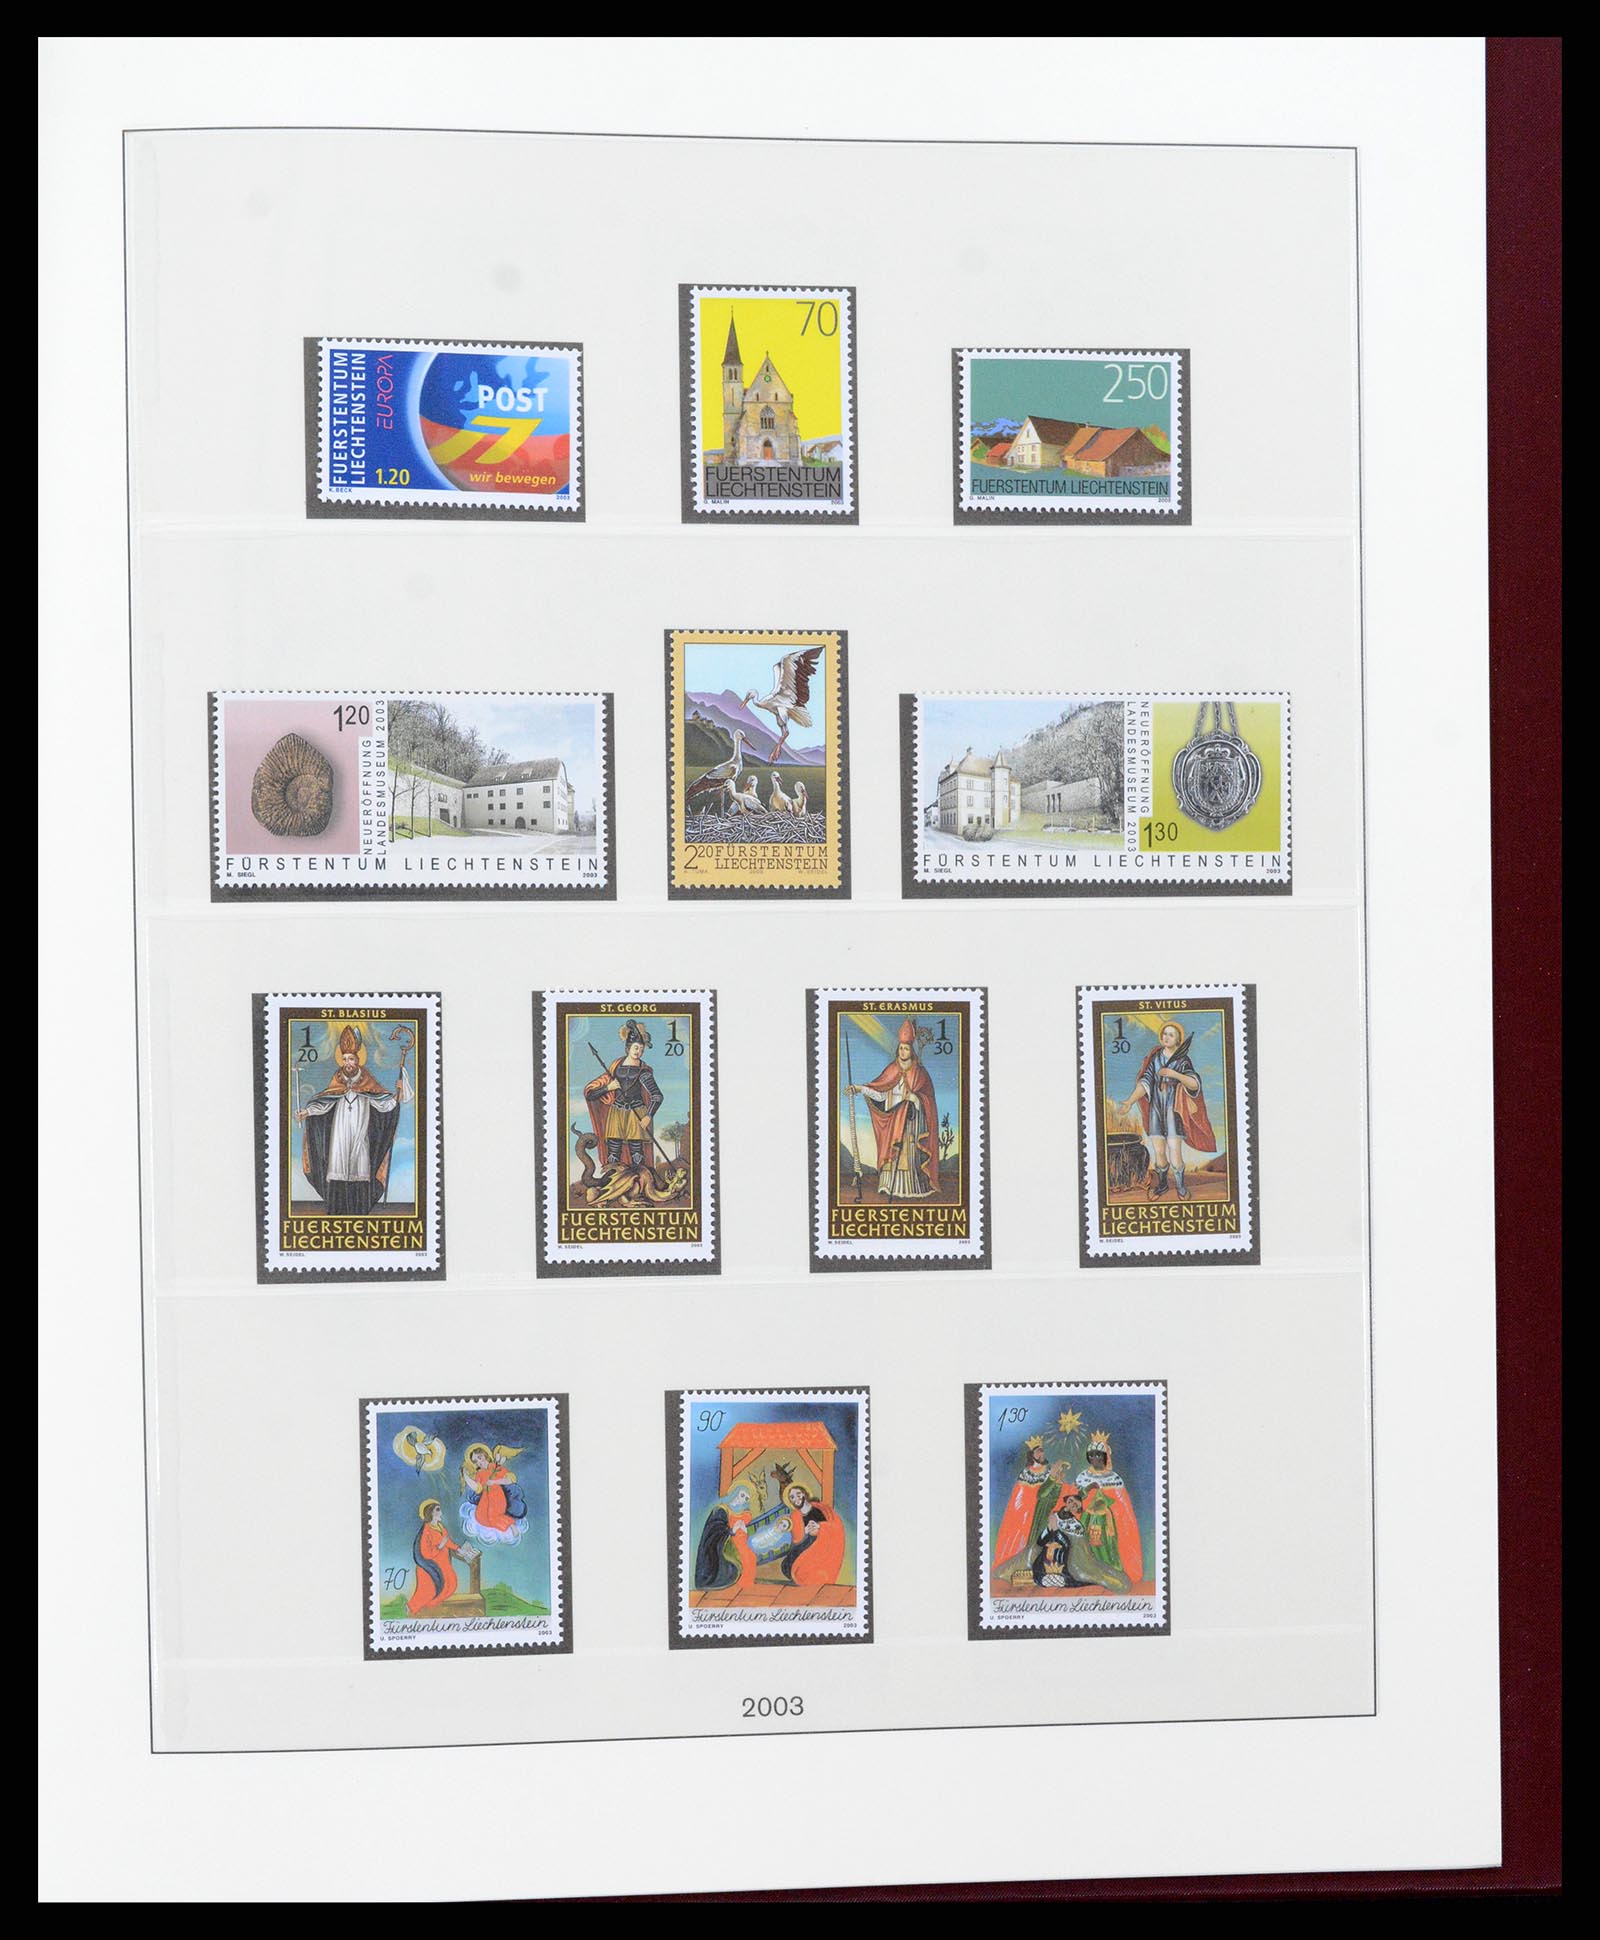 37293 158 - Stamp collection 37293 Liechtenstein 1912-2003.